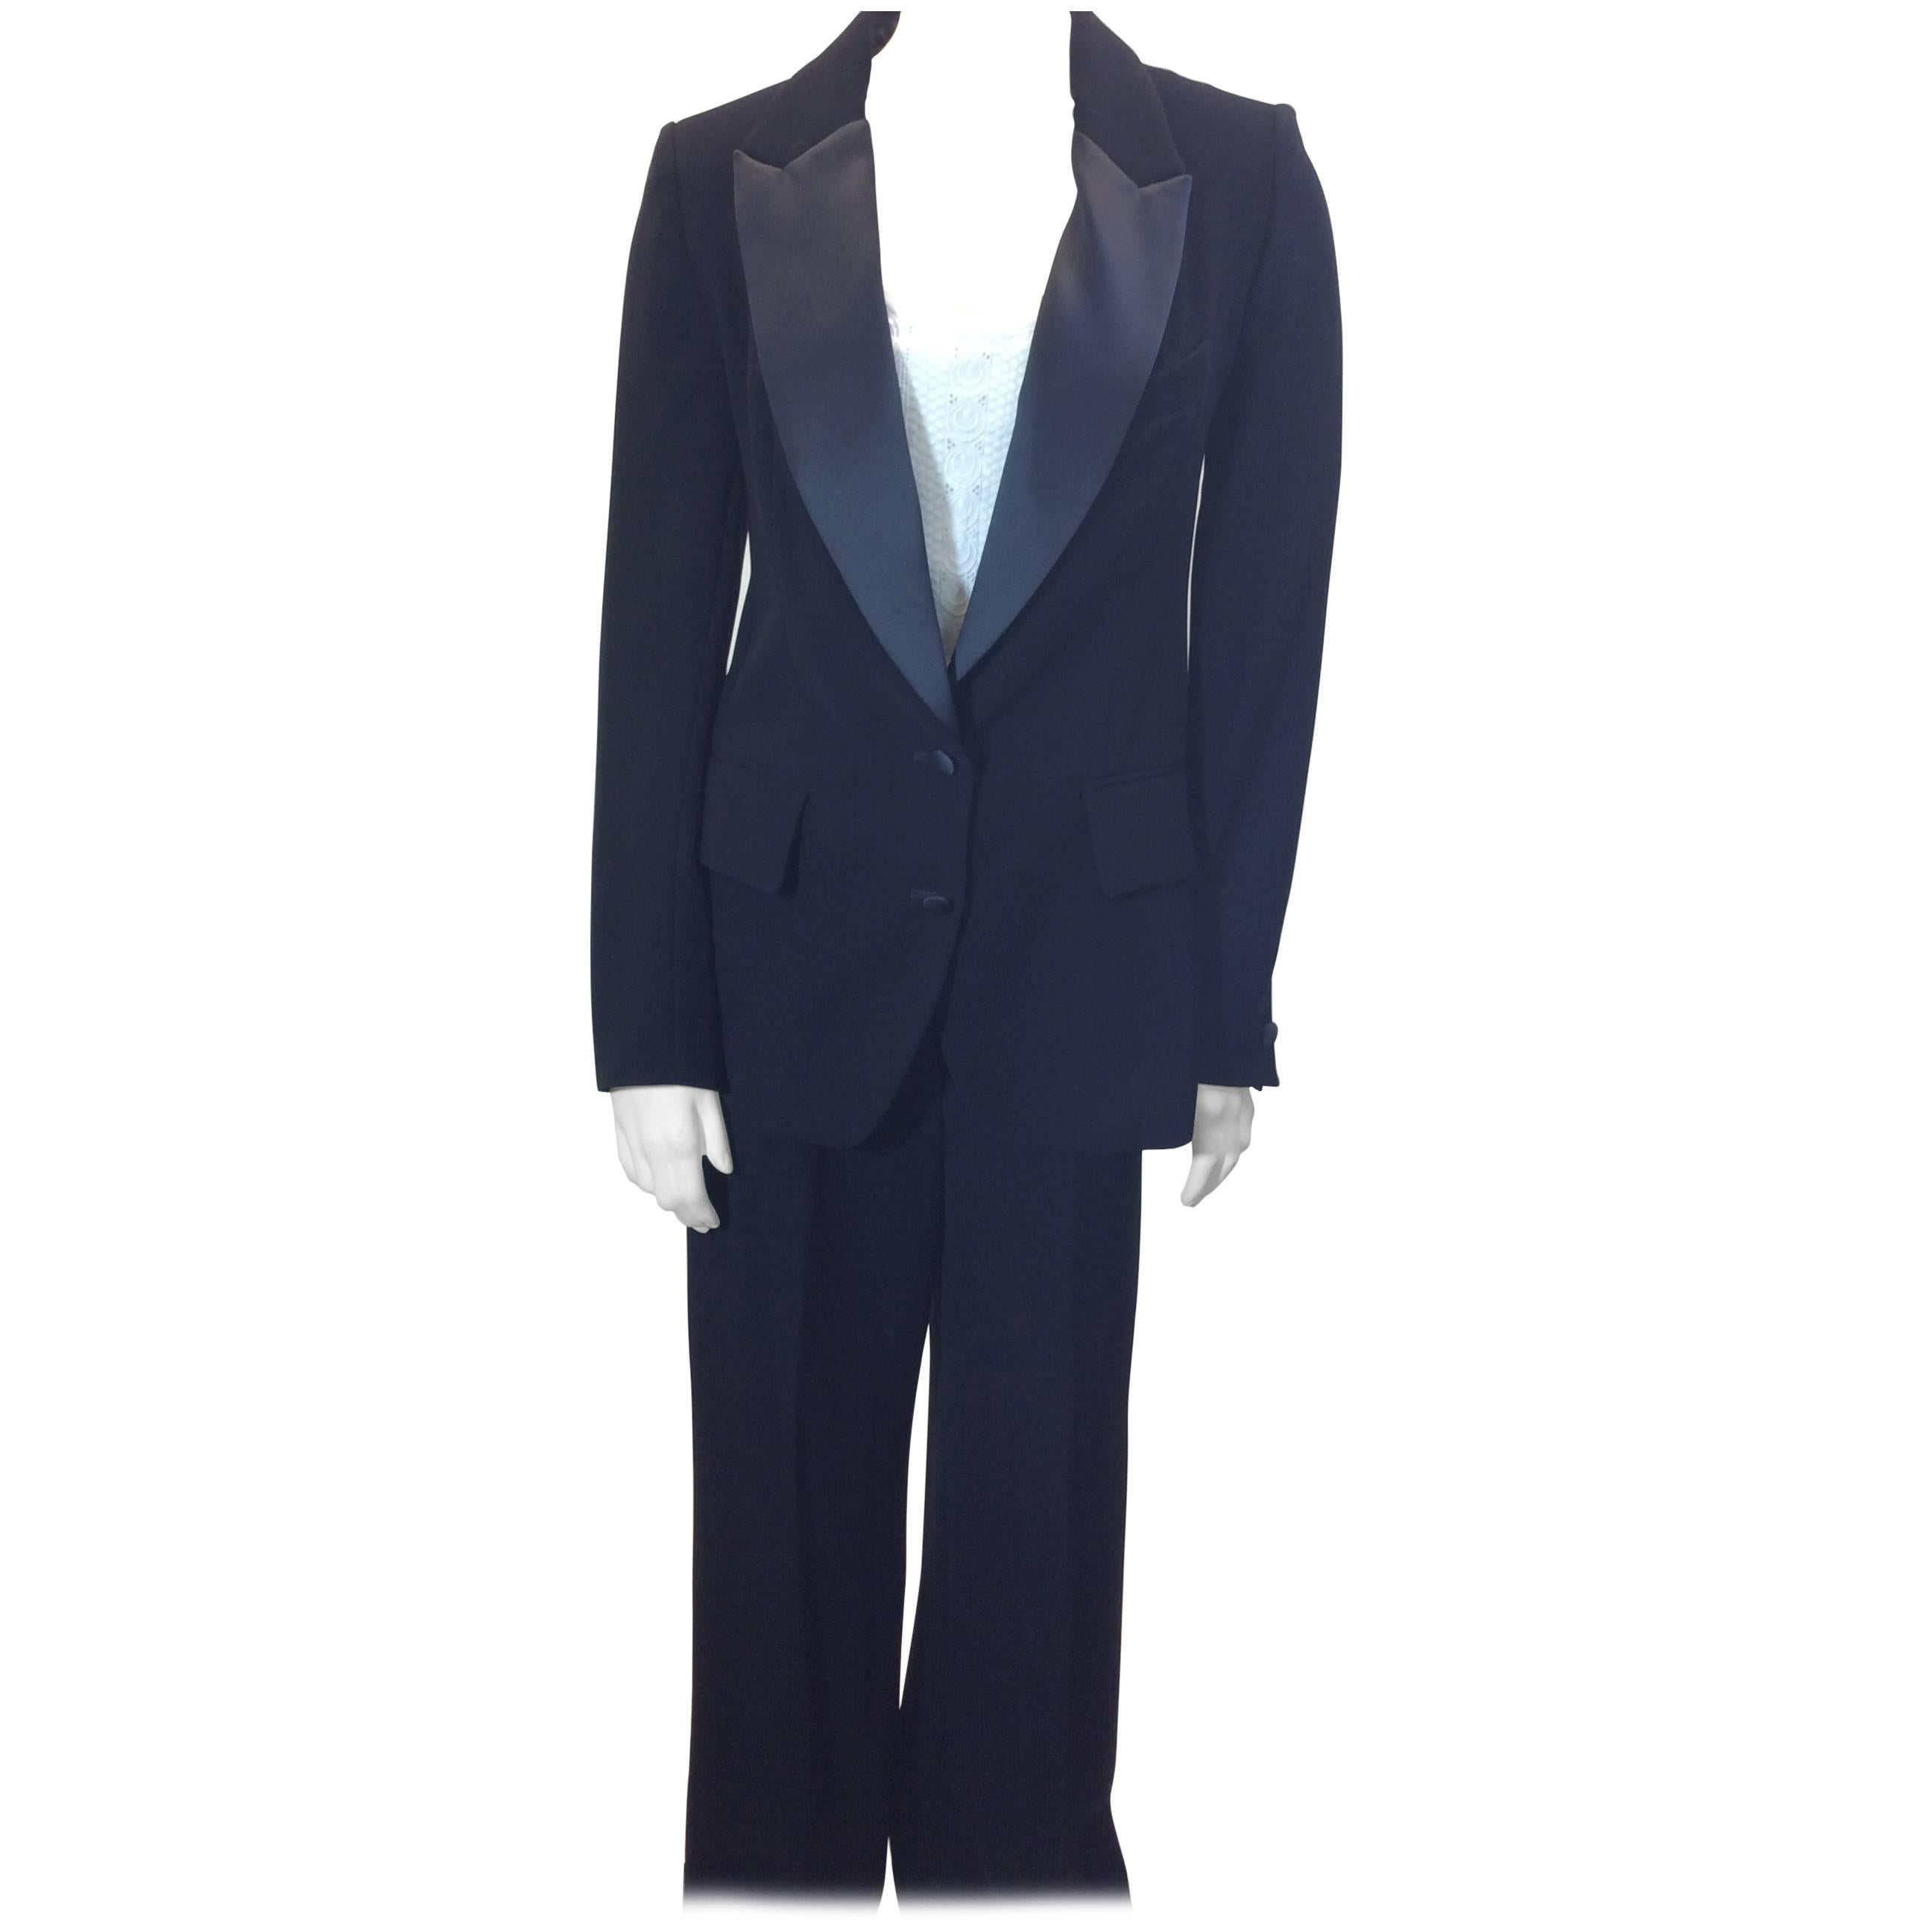 Yves Saint Laurent 2 Piece Tuxedo Pant Suit For Sale